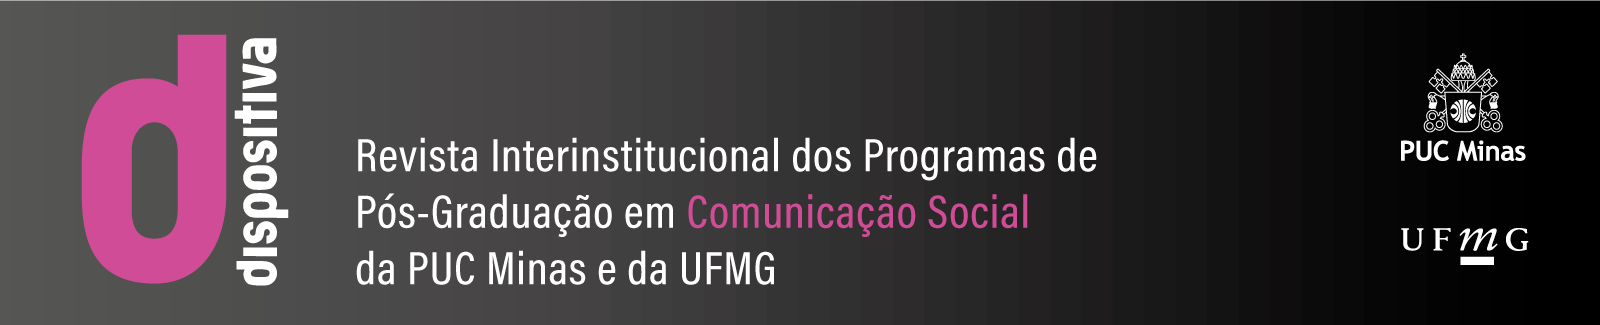 Logomarca Dispositiva - Revista Interinstitucional dos Programas de Pós-Graduação em Comunicação Social da Puc Minas e da UFMG.